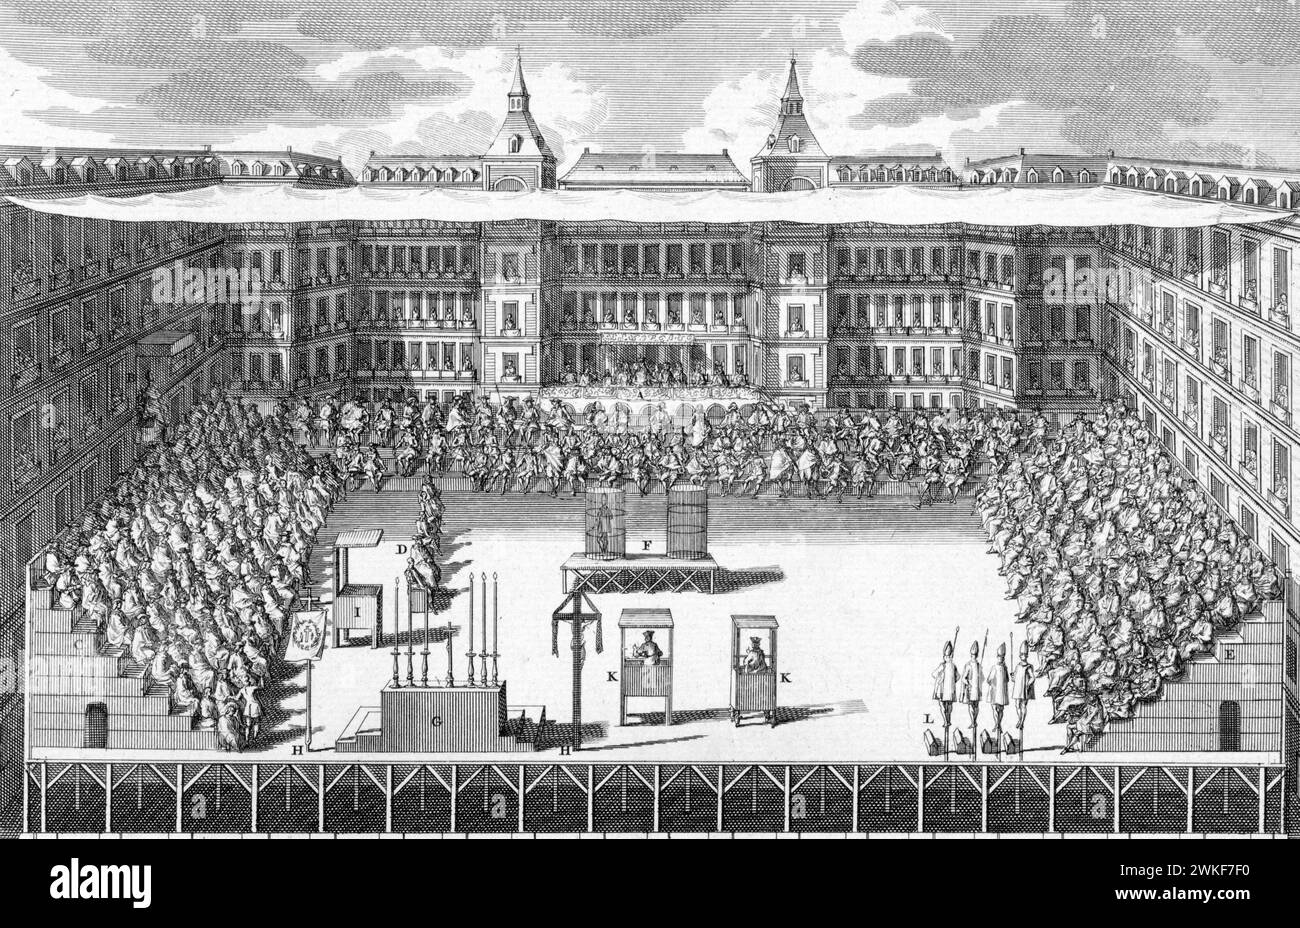 Inquisition espagnole. Réunion de l'Inquisition sur la Plaza Mayor de Madrid, gravure/gravure de Bernard Picart, 1783 Banque D'Images